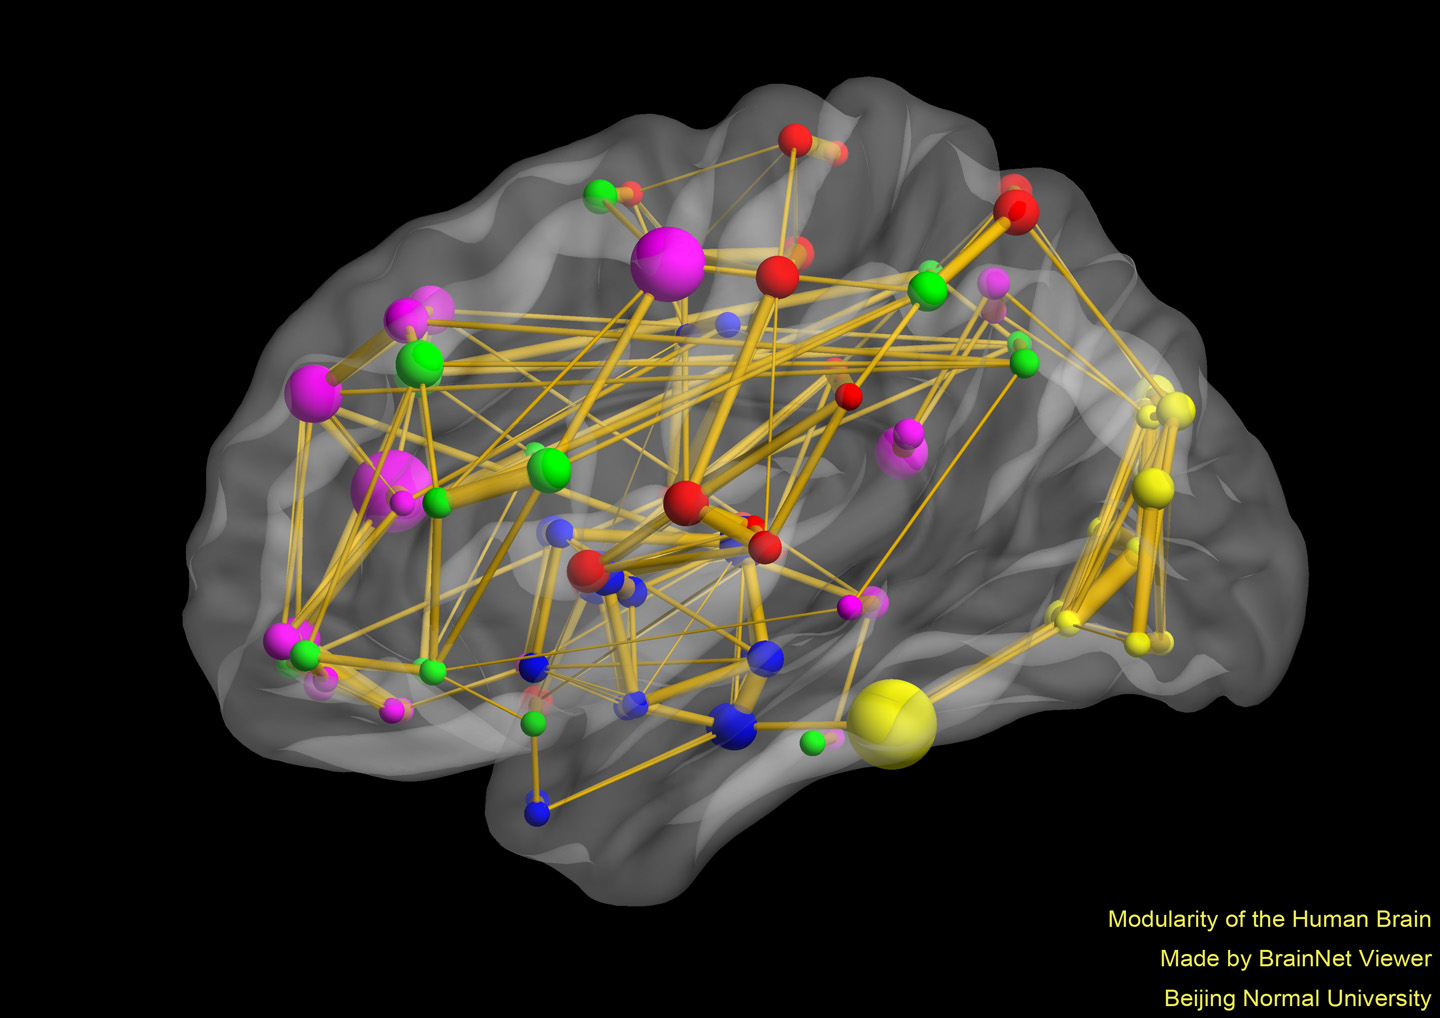 Modularity of the Human Brain